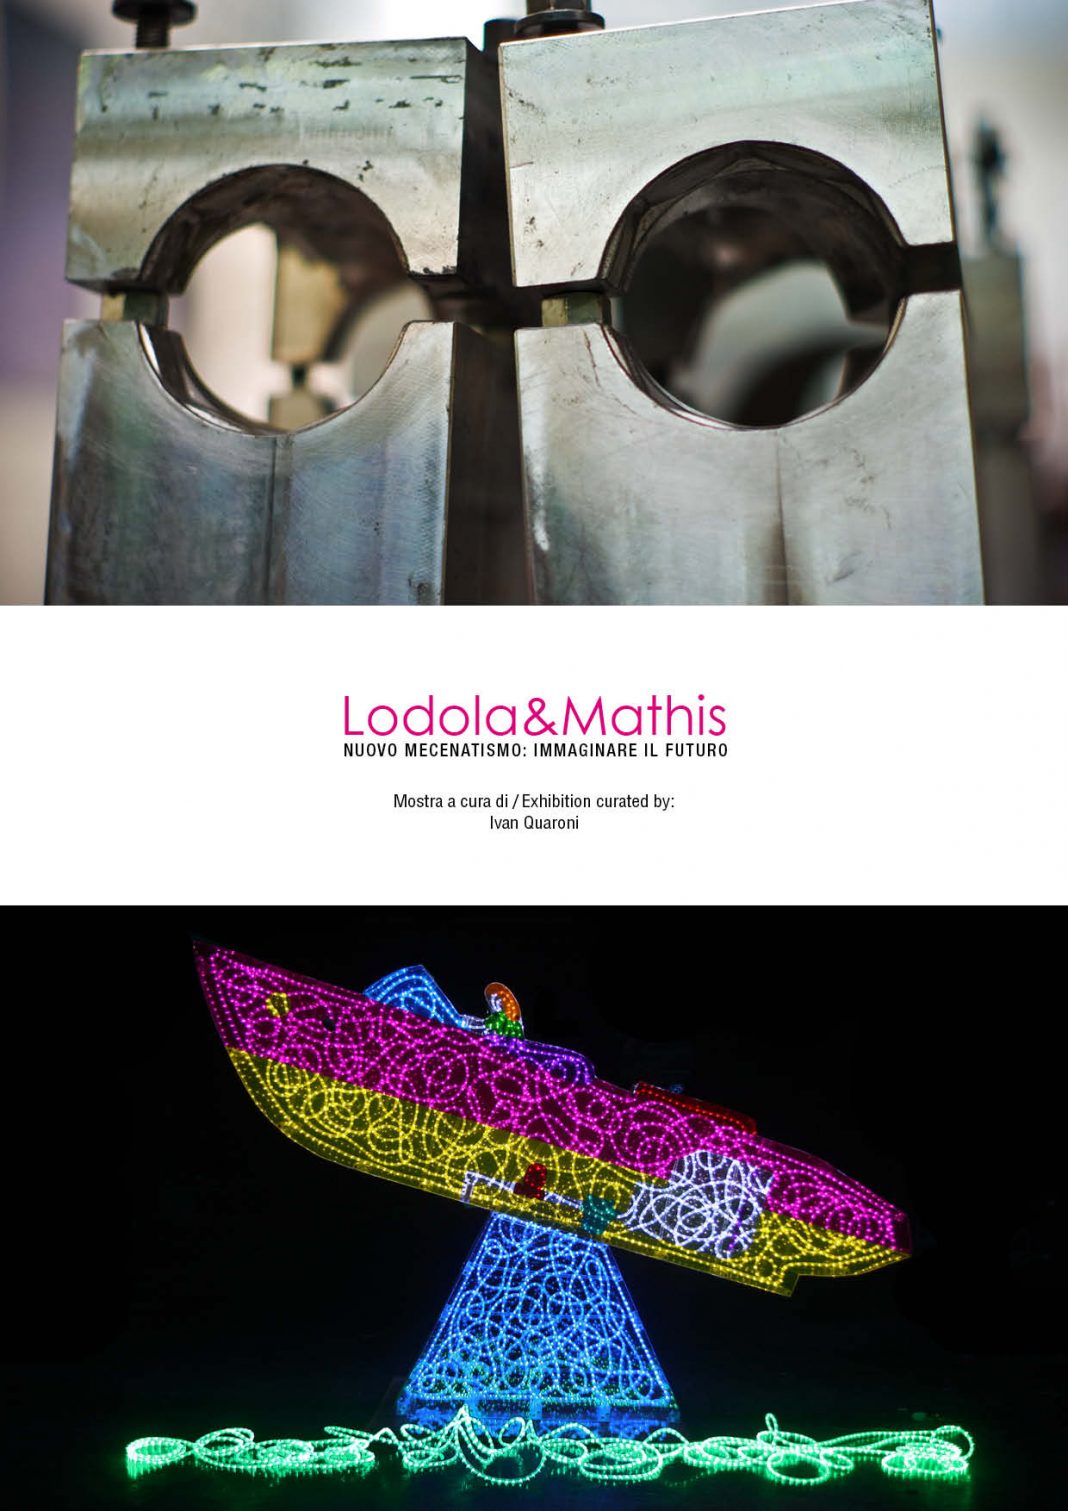 Lodola / Mathis – Nuovo mecenatismo: immaginare il futurohttps://www.exibart.com/repository/media/eventi/2014/09/lodola-mathis-8211-nuovo-mecenatismo-immaginare-il-futuro-1068x1511.jpg